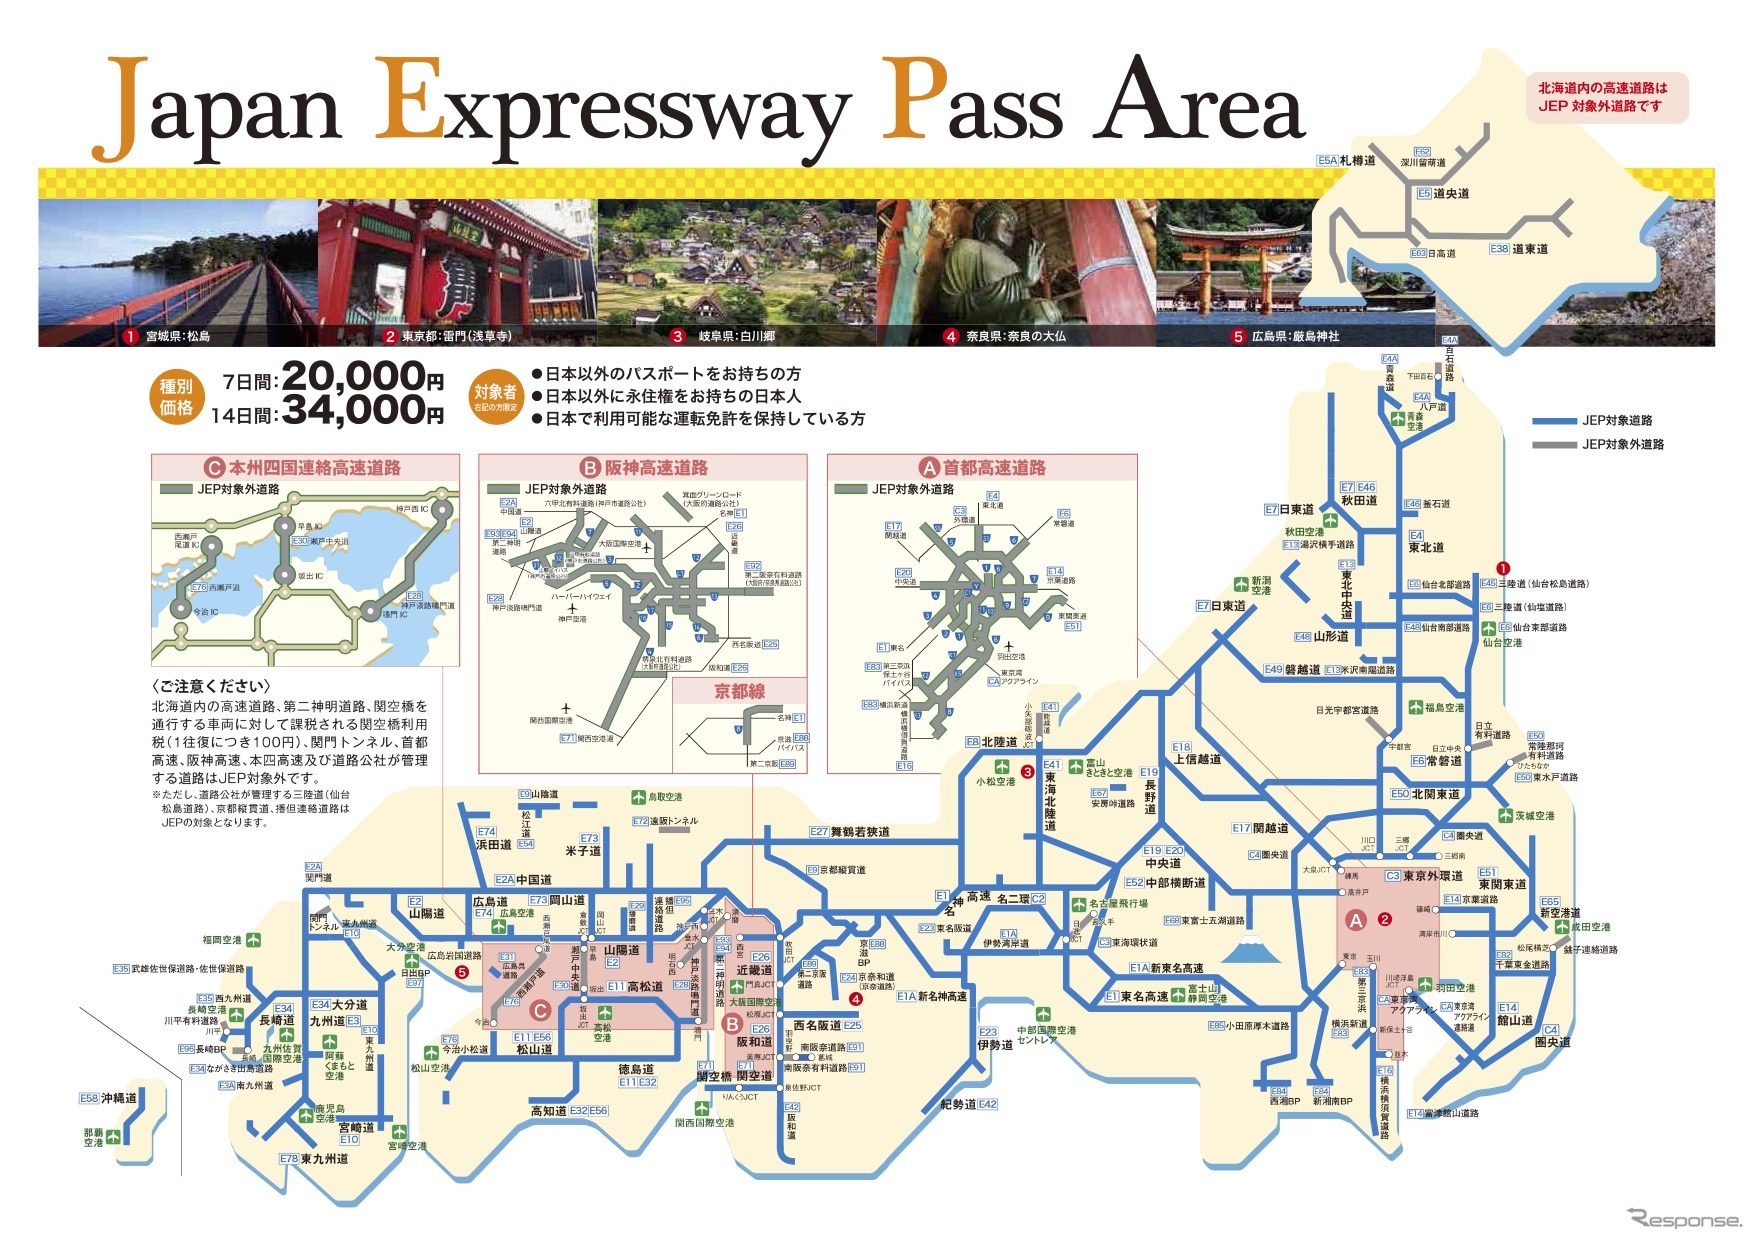 Japan Expressway Pass